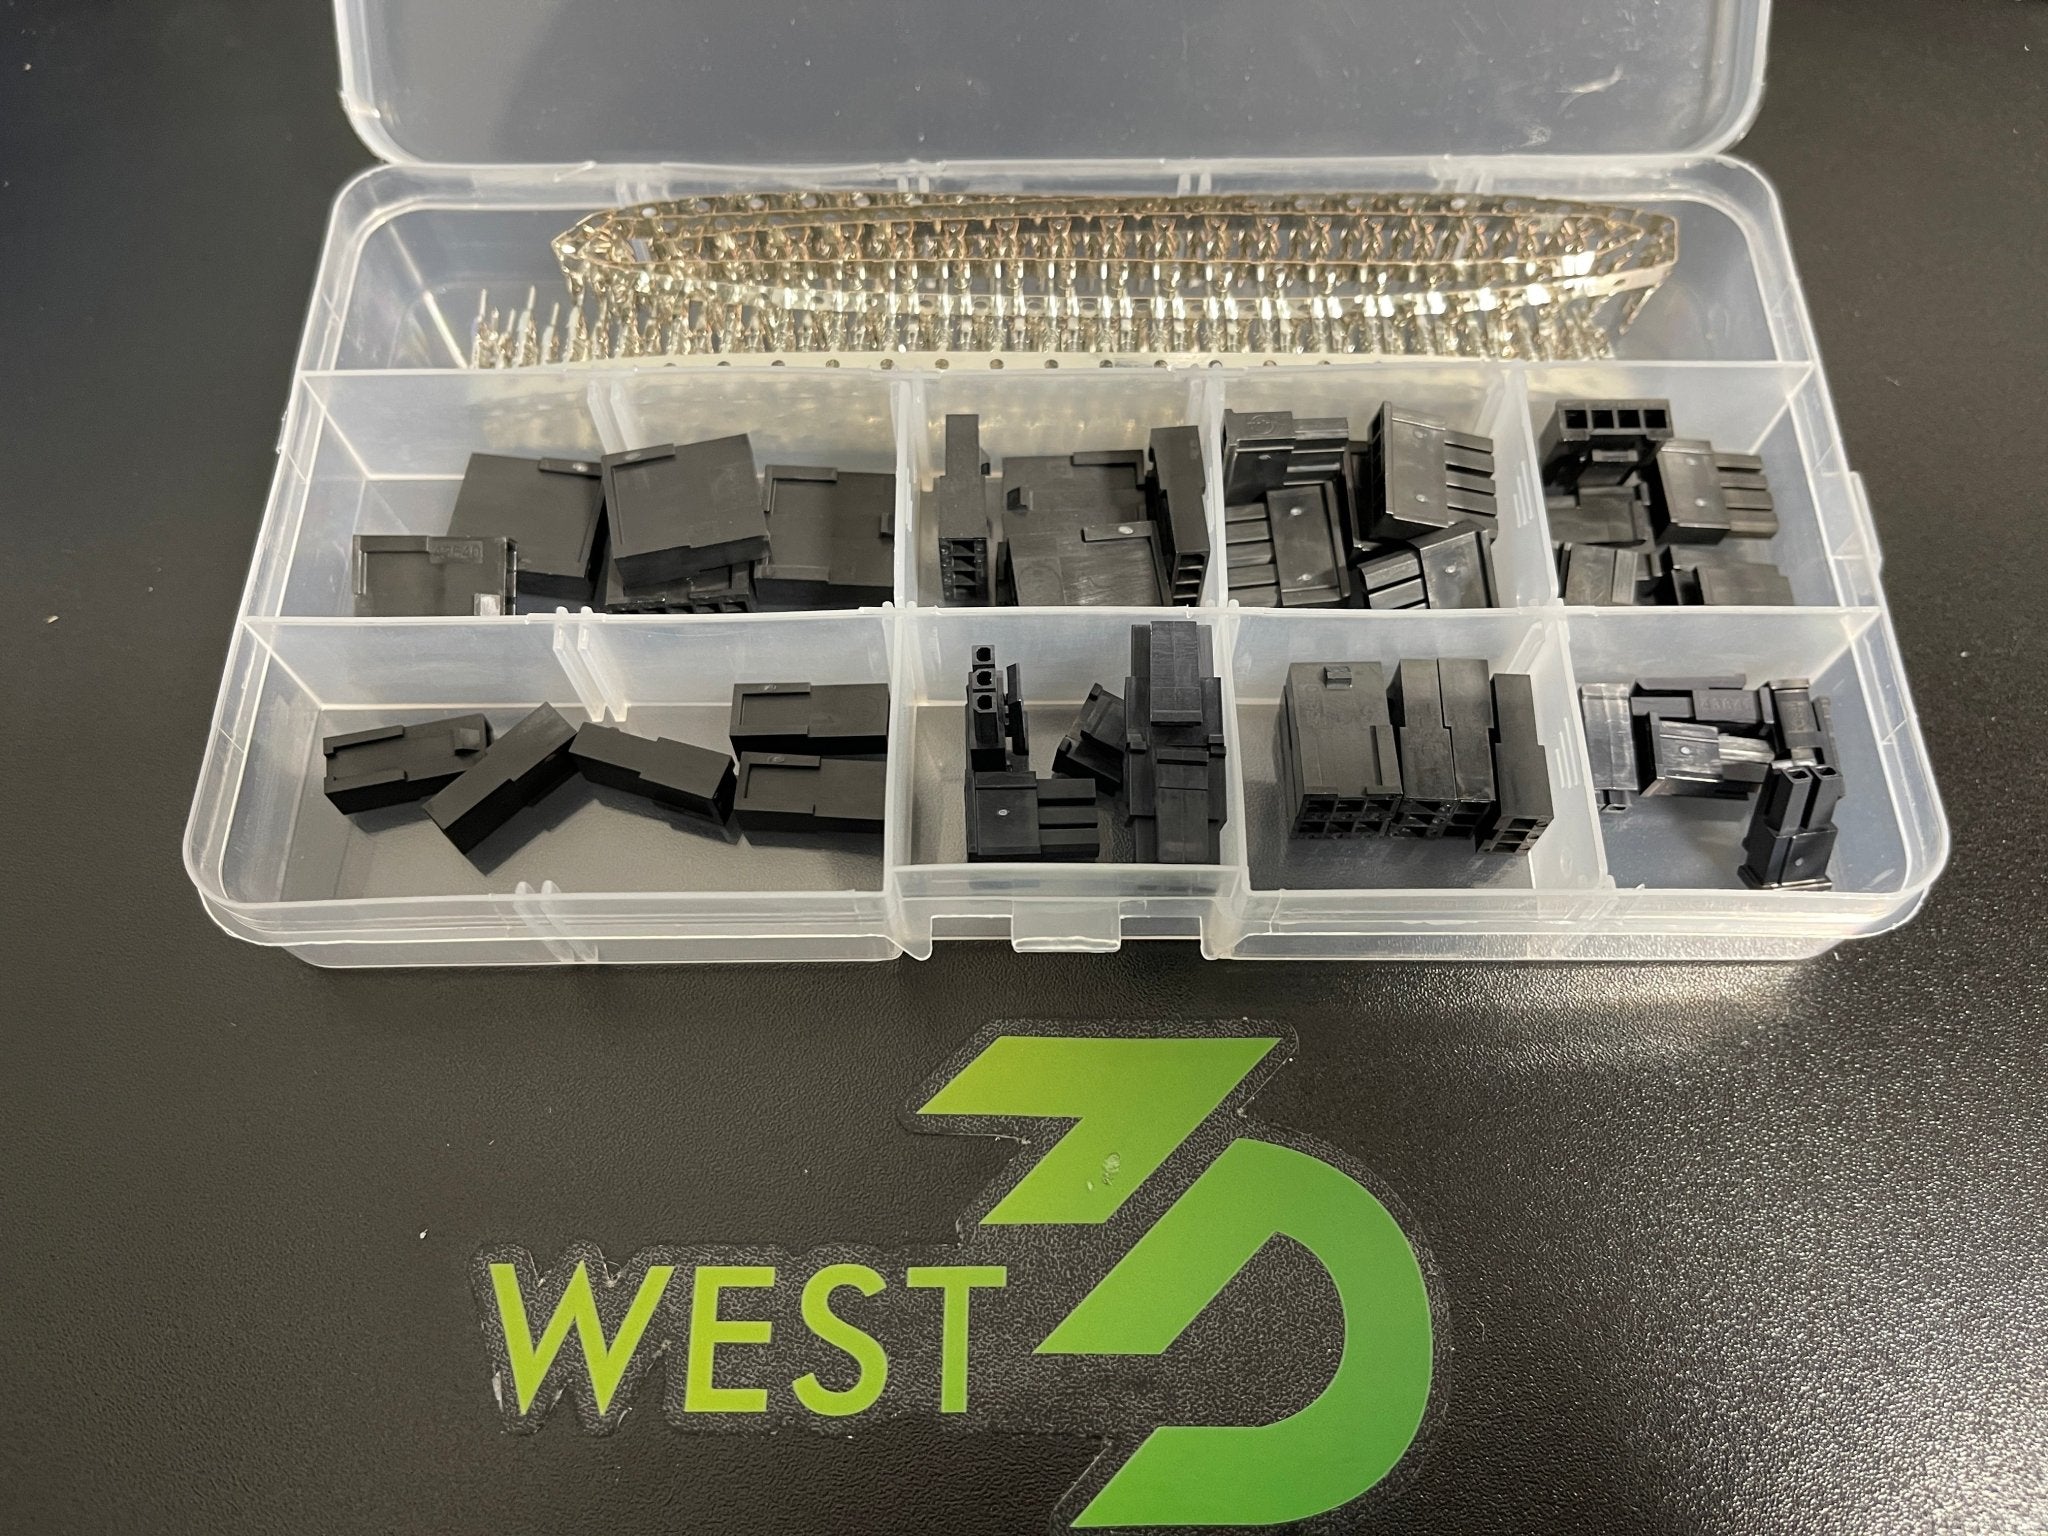 Genuine Molex 230pcs Microfit 3.0 2p/3p/4p/5p male/female connector (4*2*5) crimp terminal (2*95)connector kits Micro Fit 3 - West3D Printing - Molex